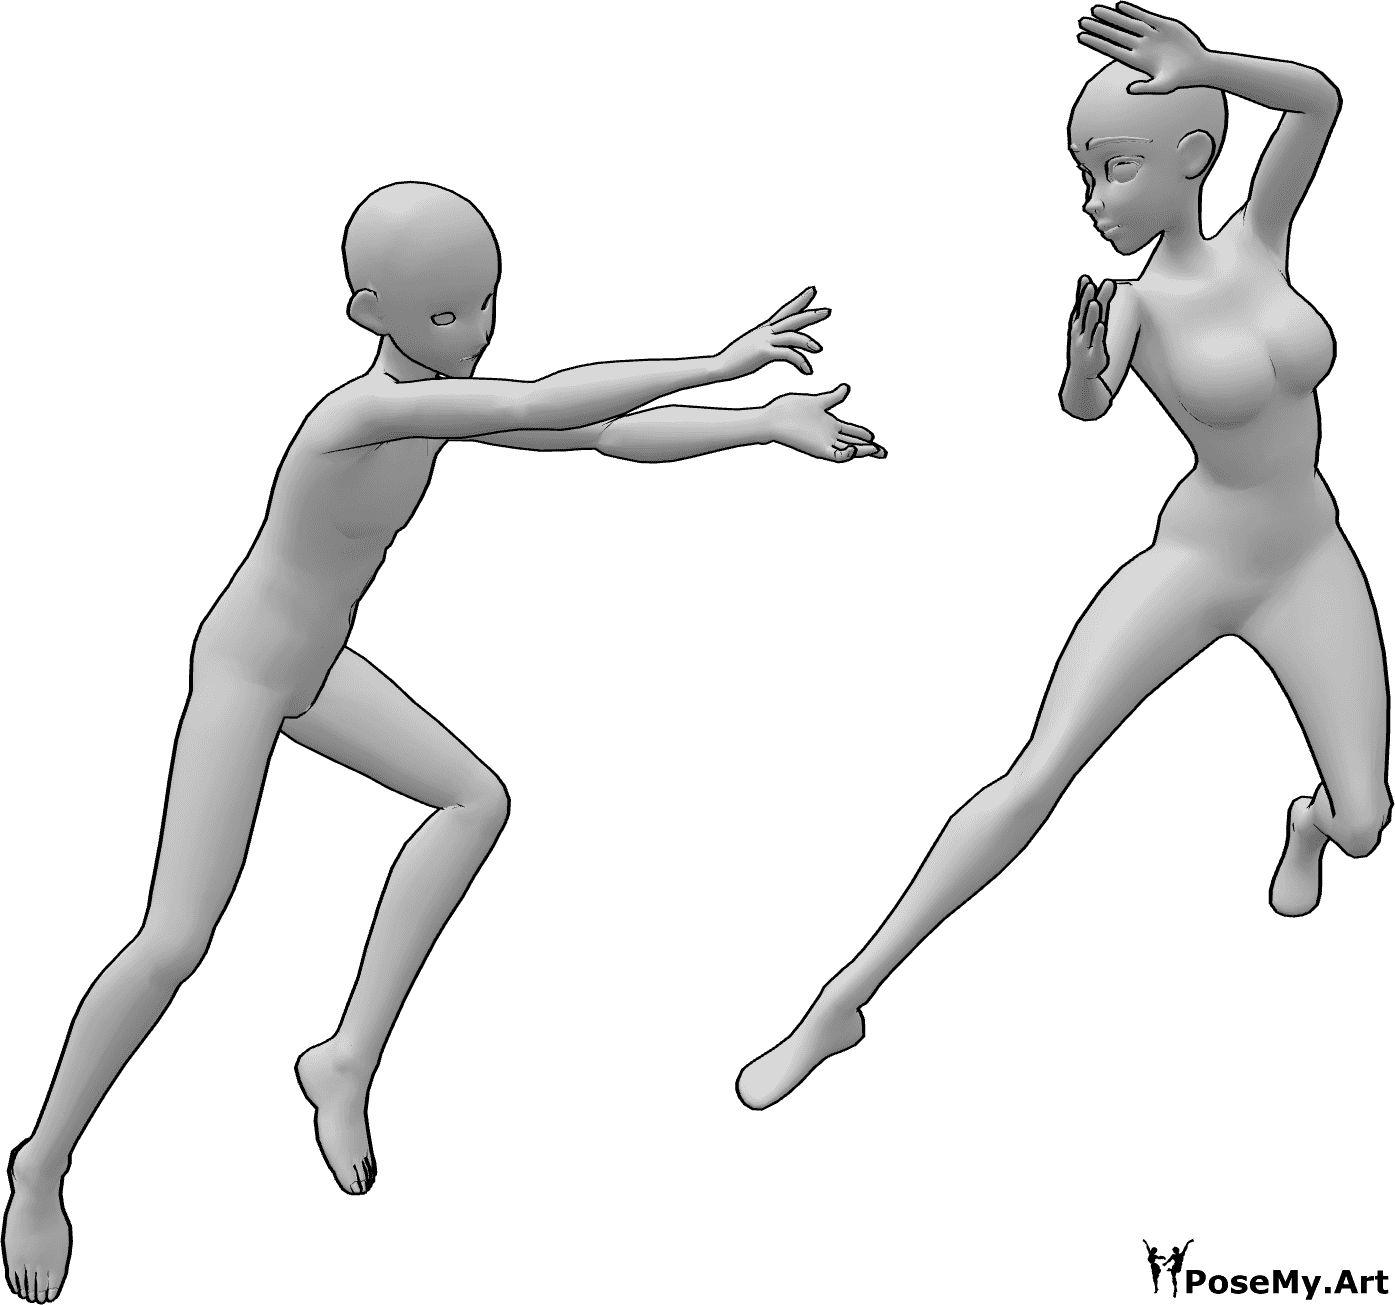 Referencia de poses- Anime dúo lucha pose - Anime femenino y masculino en una lucha de fantasía en el aire con poderes mágicos pose